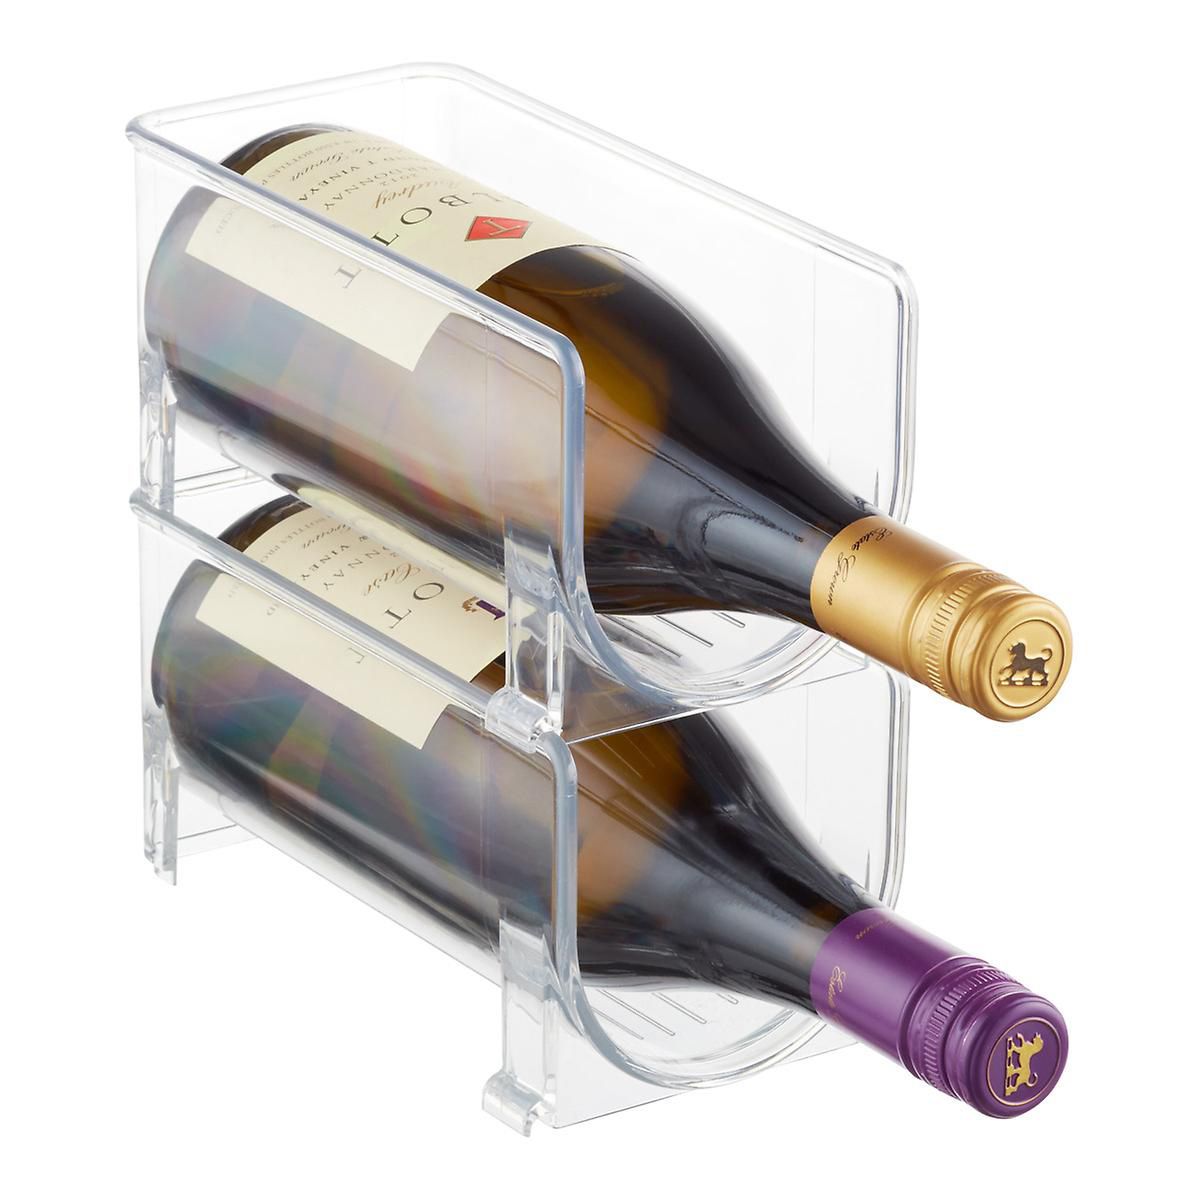 Best for Wine: iDesign Linus Fridge Bins Wine Holder